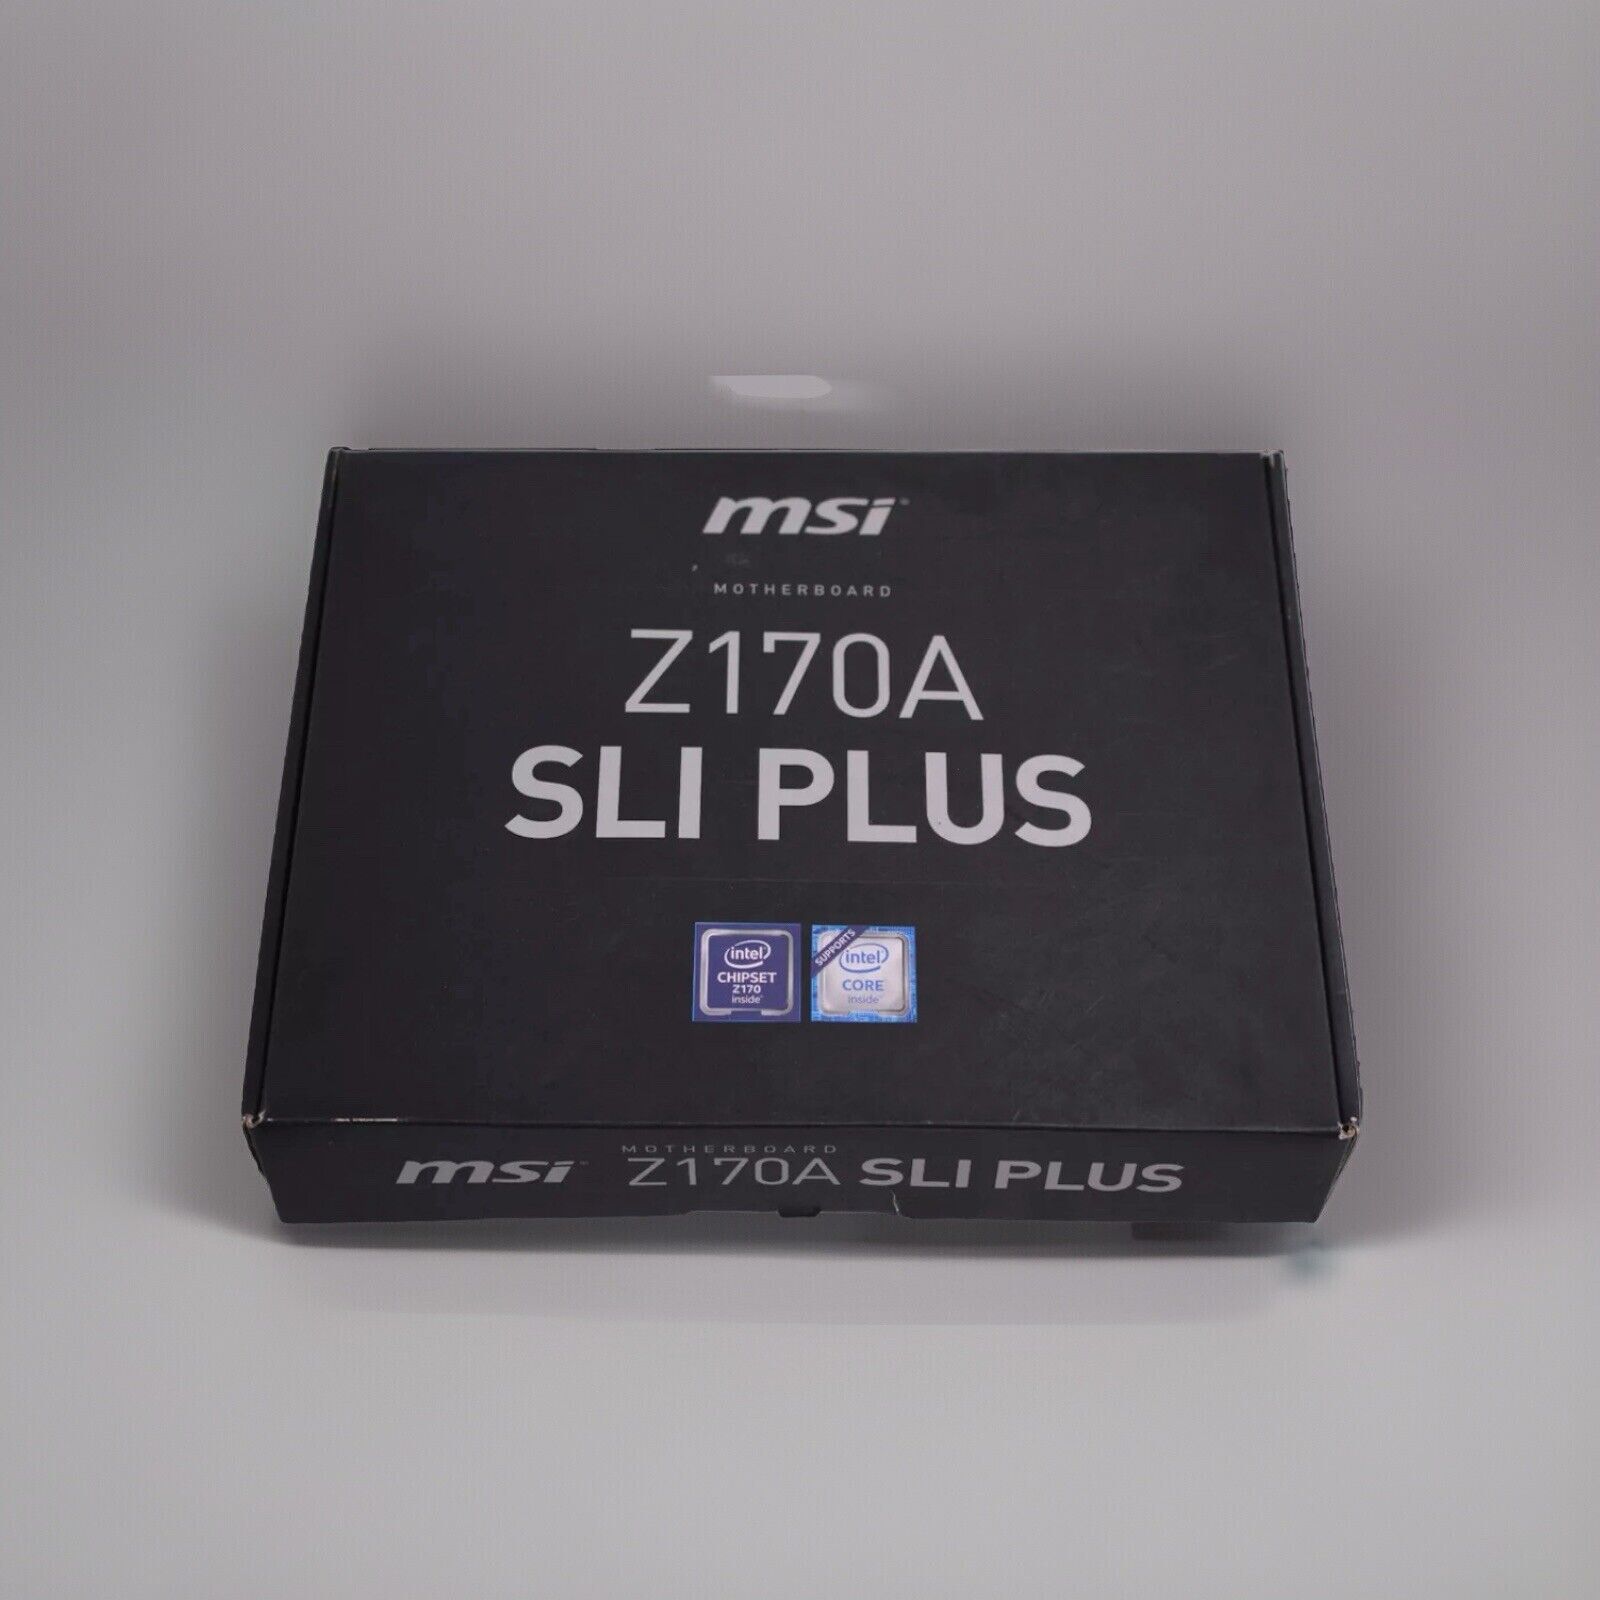 MSI Z170a SLI Plus Motherboard